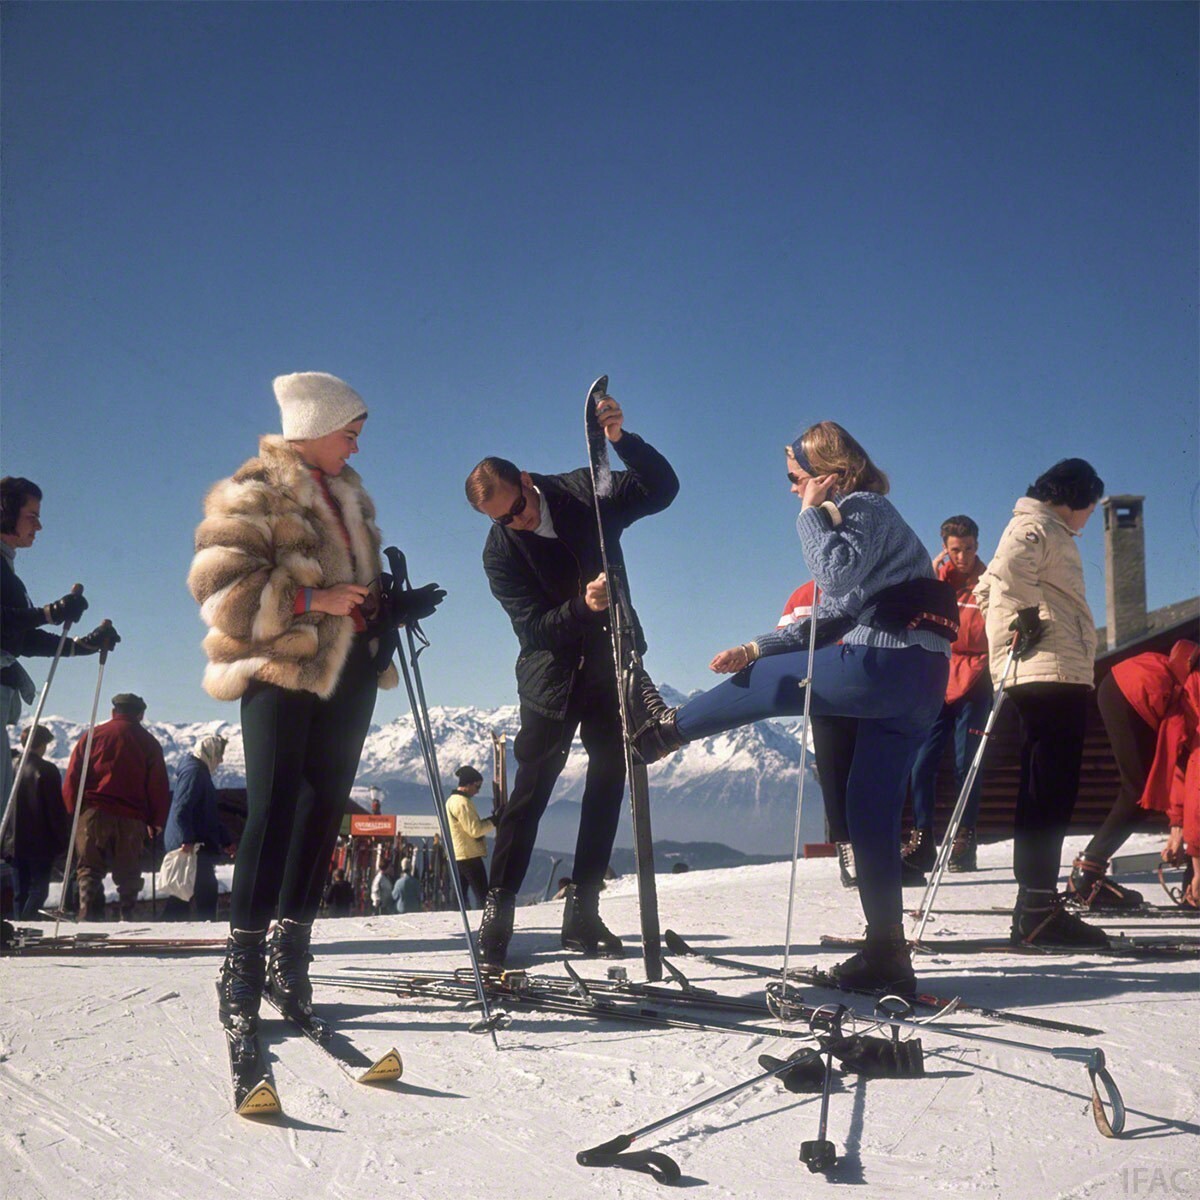 Вербье-лыжники, 1964 год. Фотограф Слим Ааронс